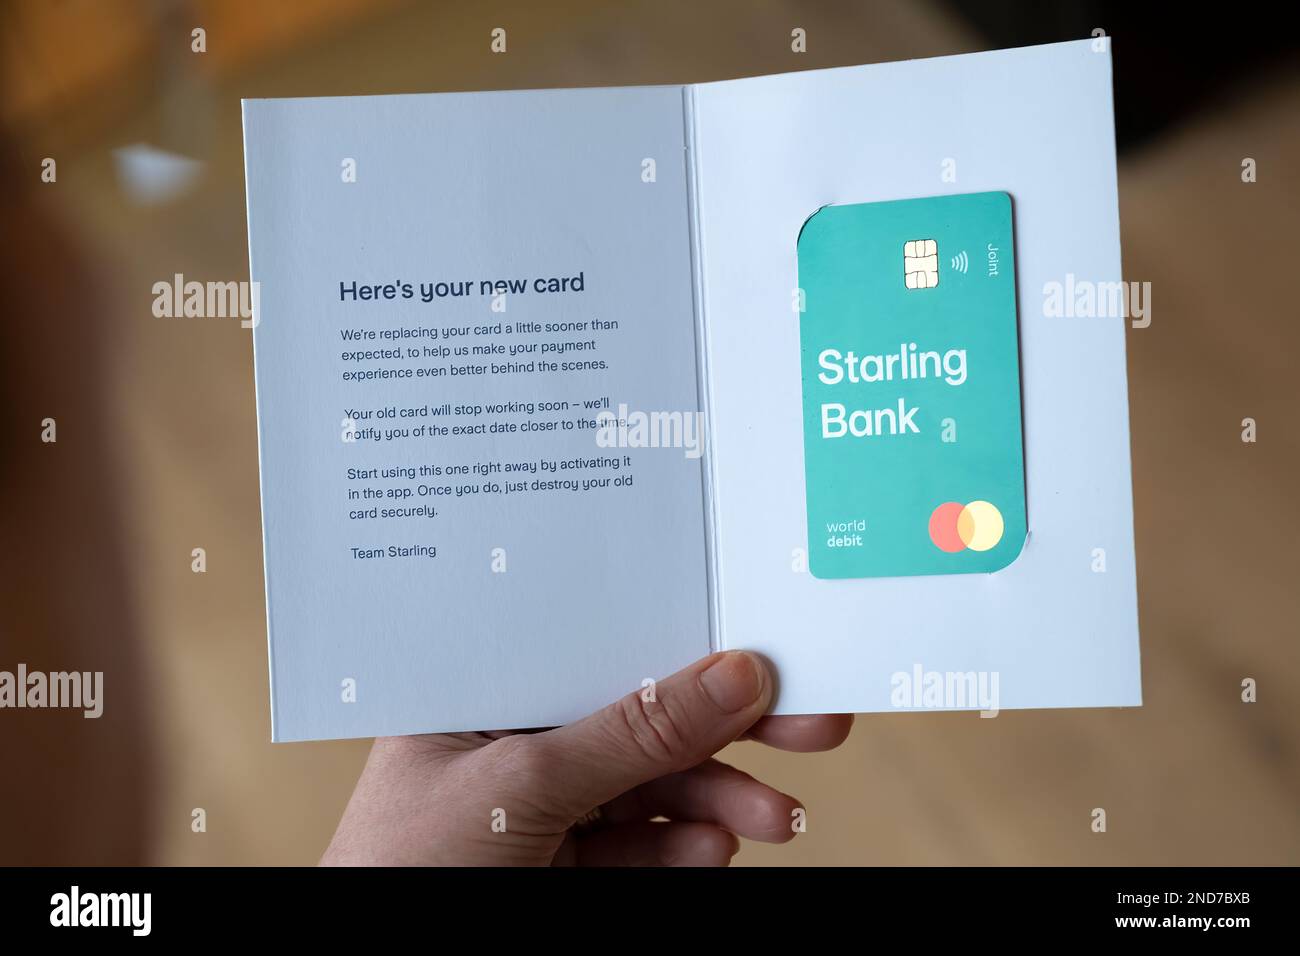 Un client de la banque Starling détient une nouvelle carte de débit qui vient d'être livrée. Starling est une banque sans espèces challenger numérique basée au Royaume-Uni Banque D'Images